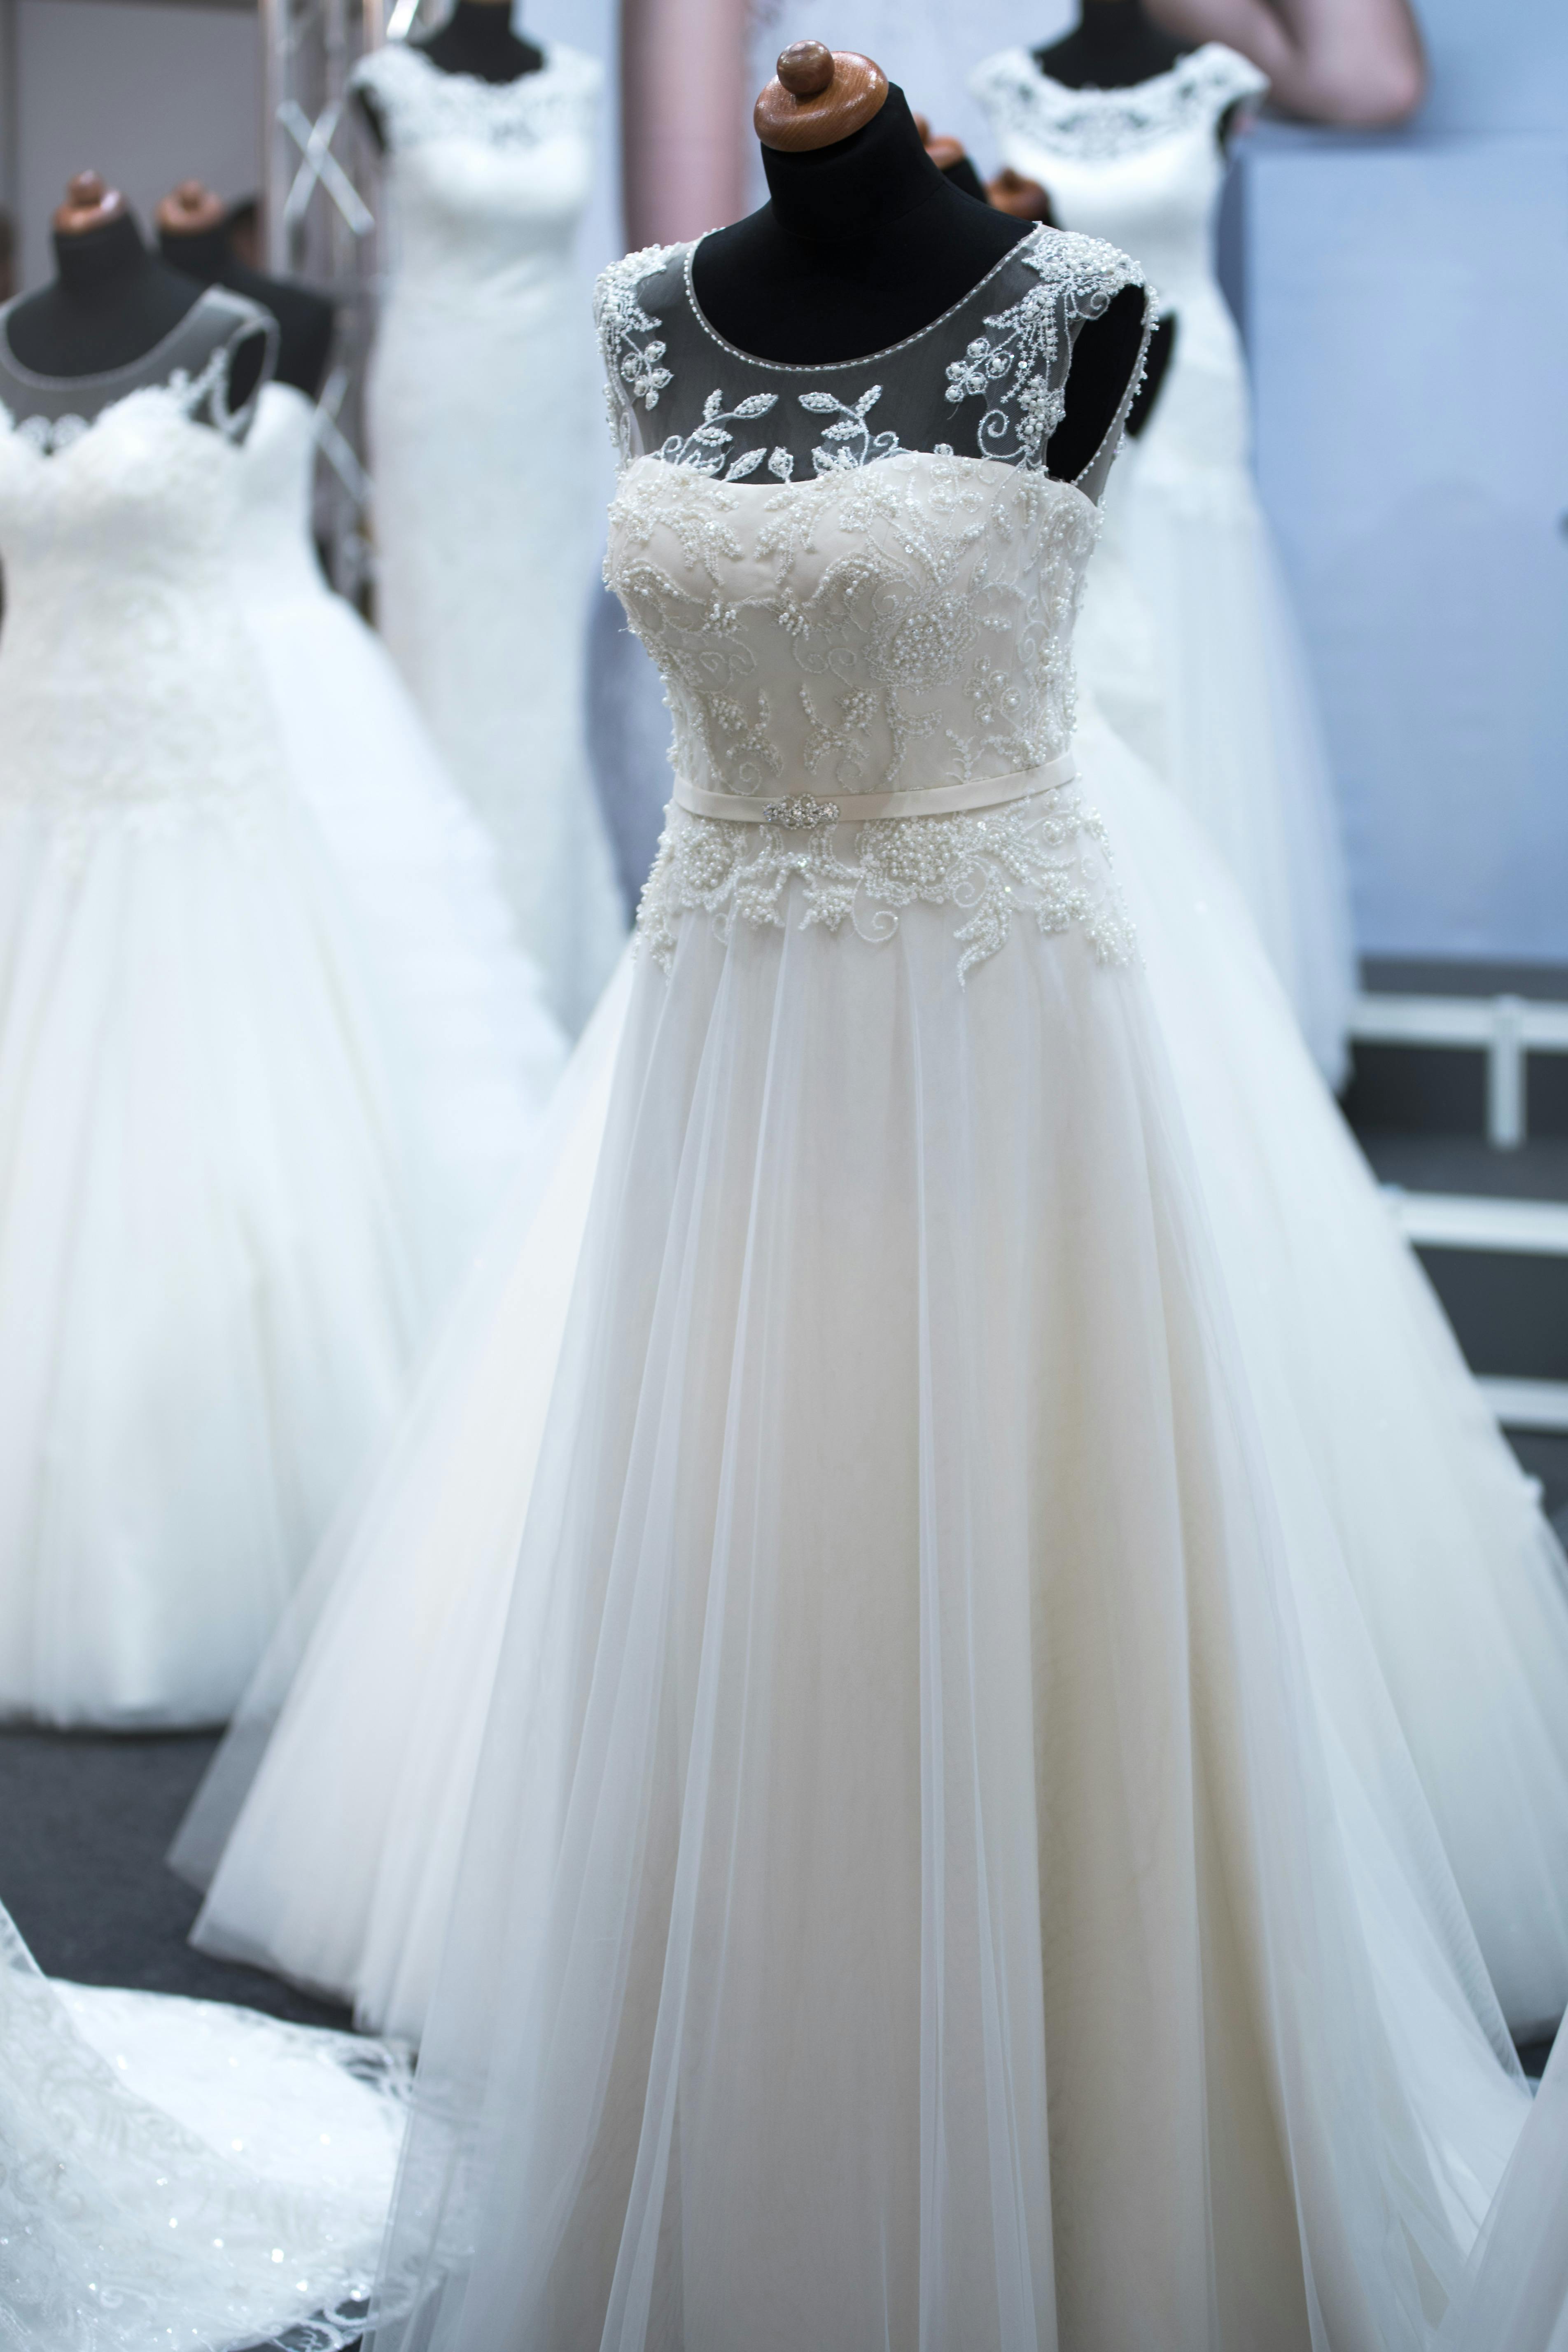 Diferentes vestidos de novia expuestos | Foto: Pexels